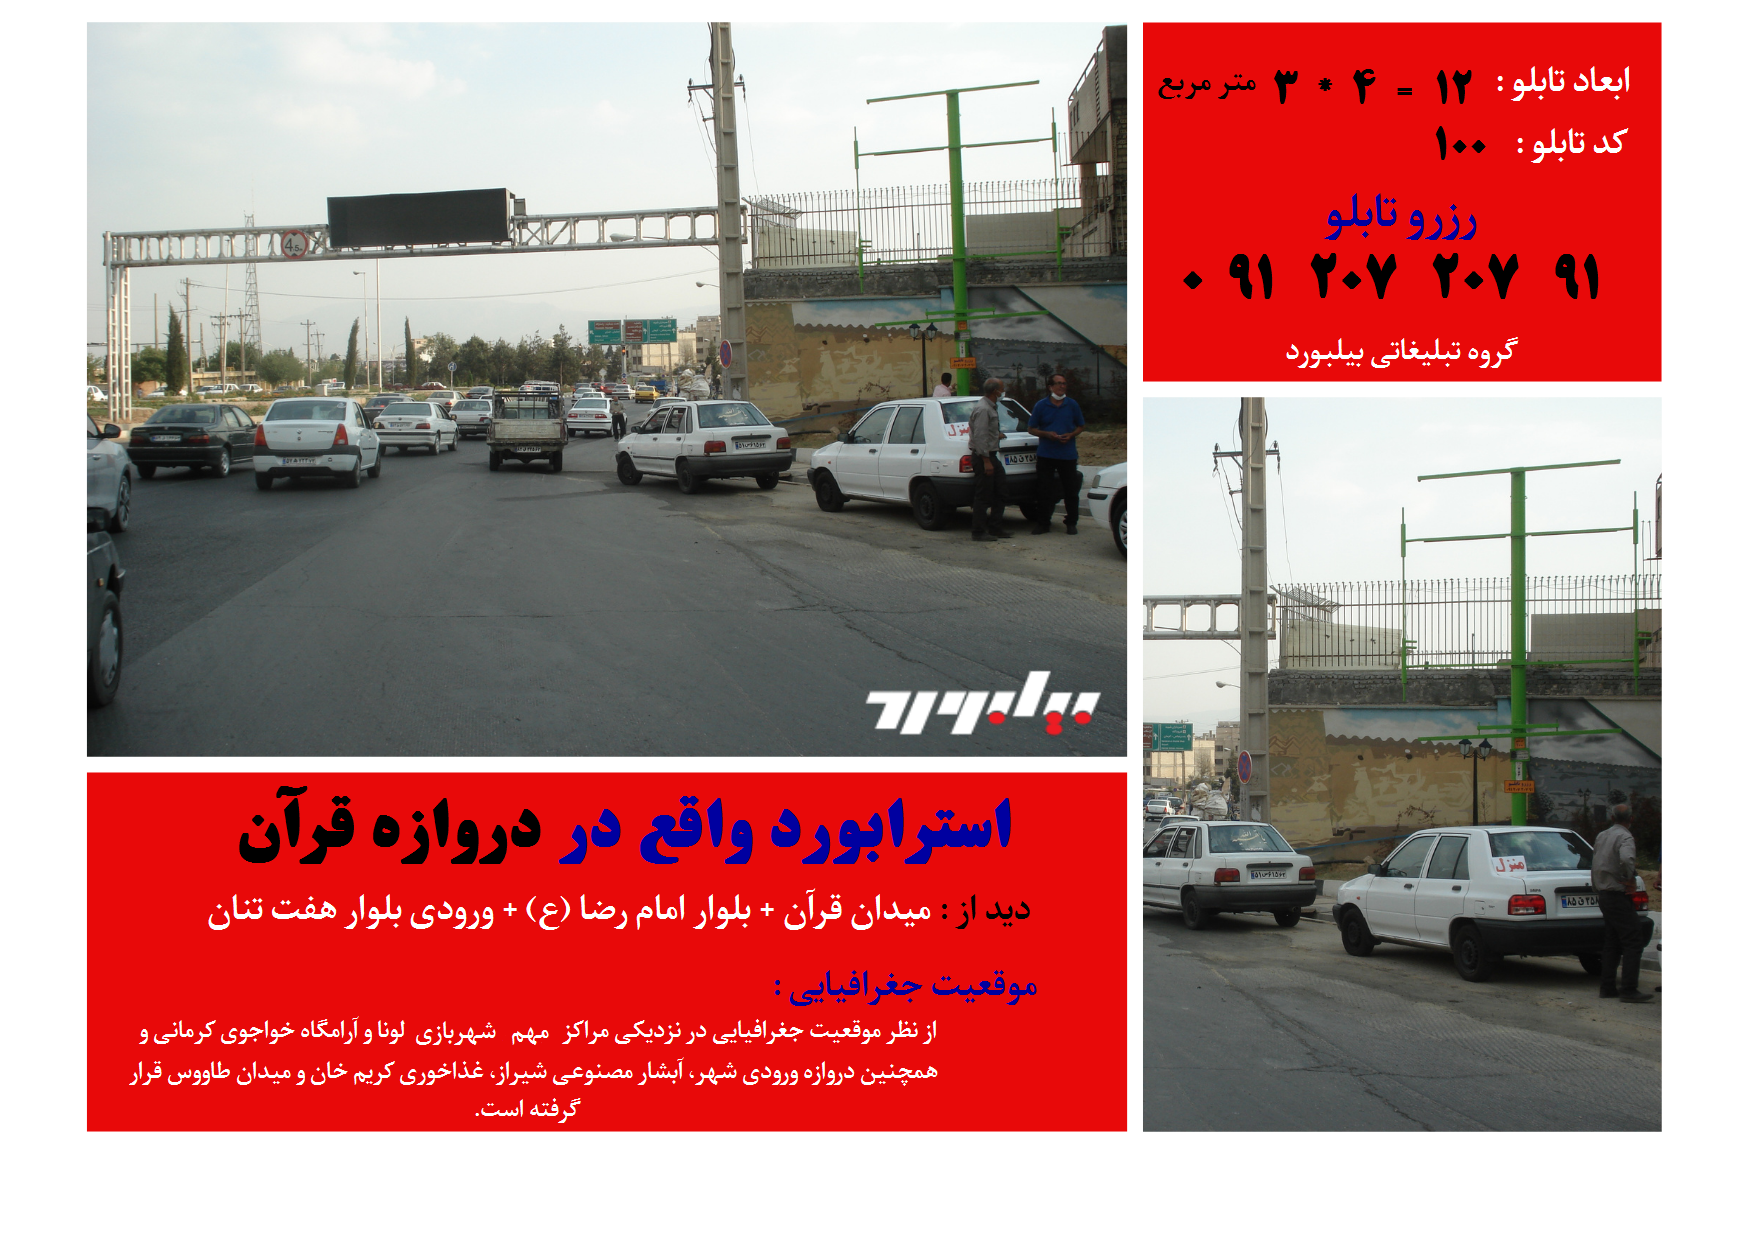 رزرو تابلو تبلیغاتی در شیراز|تبلیغات|فارس شیراز|ثبت آگهی رایگان|بیلبورد